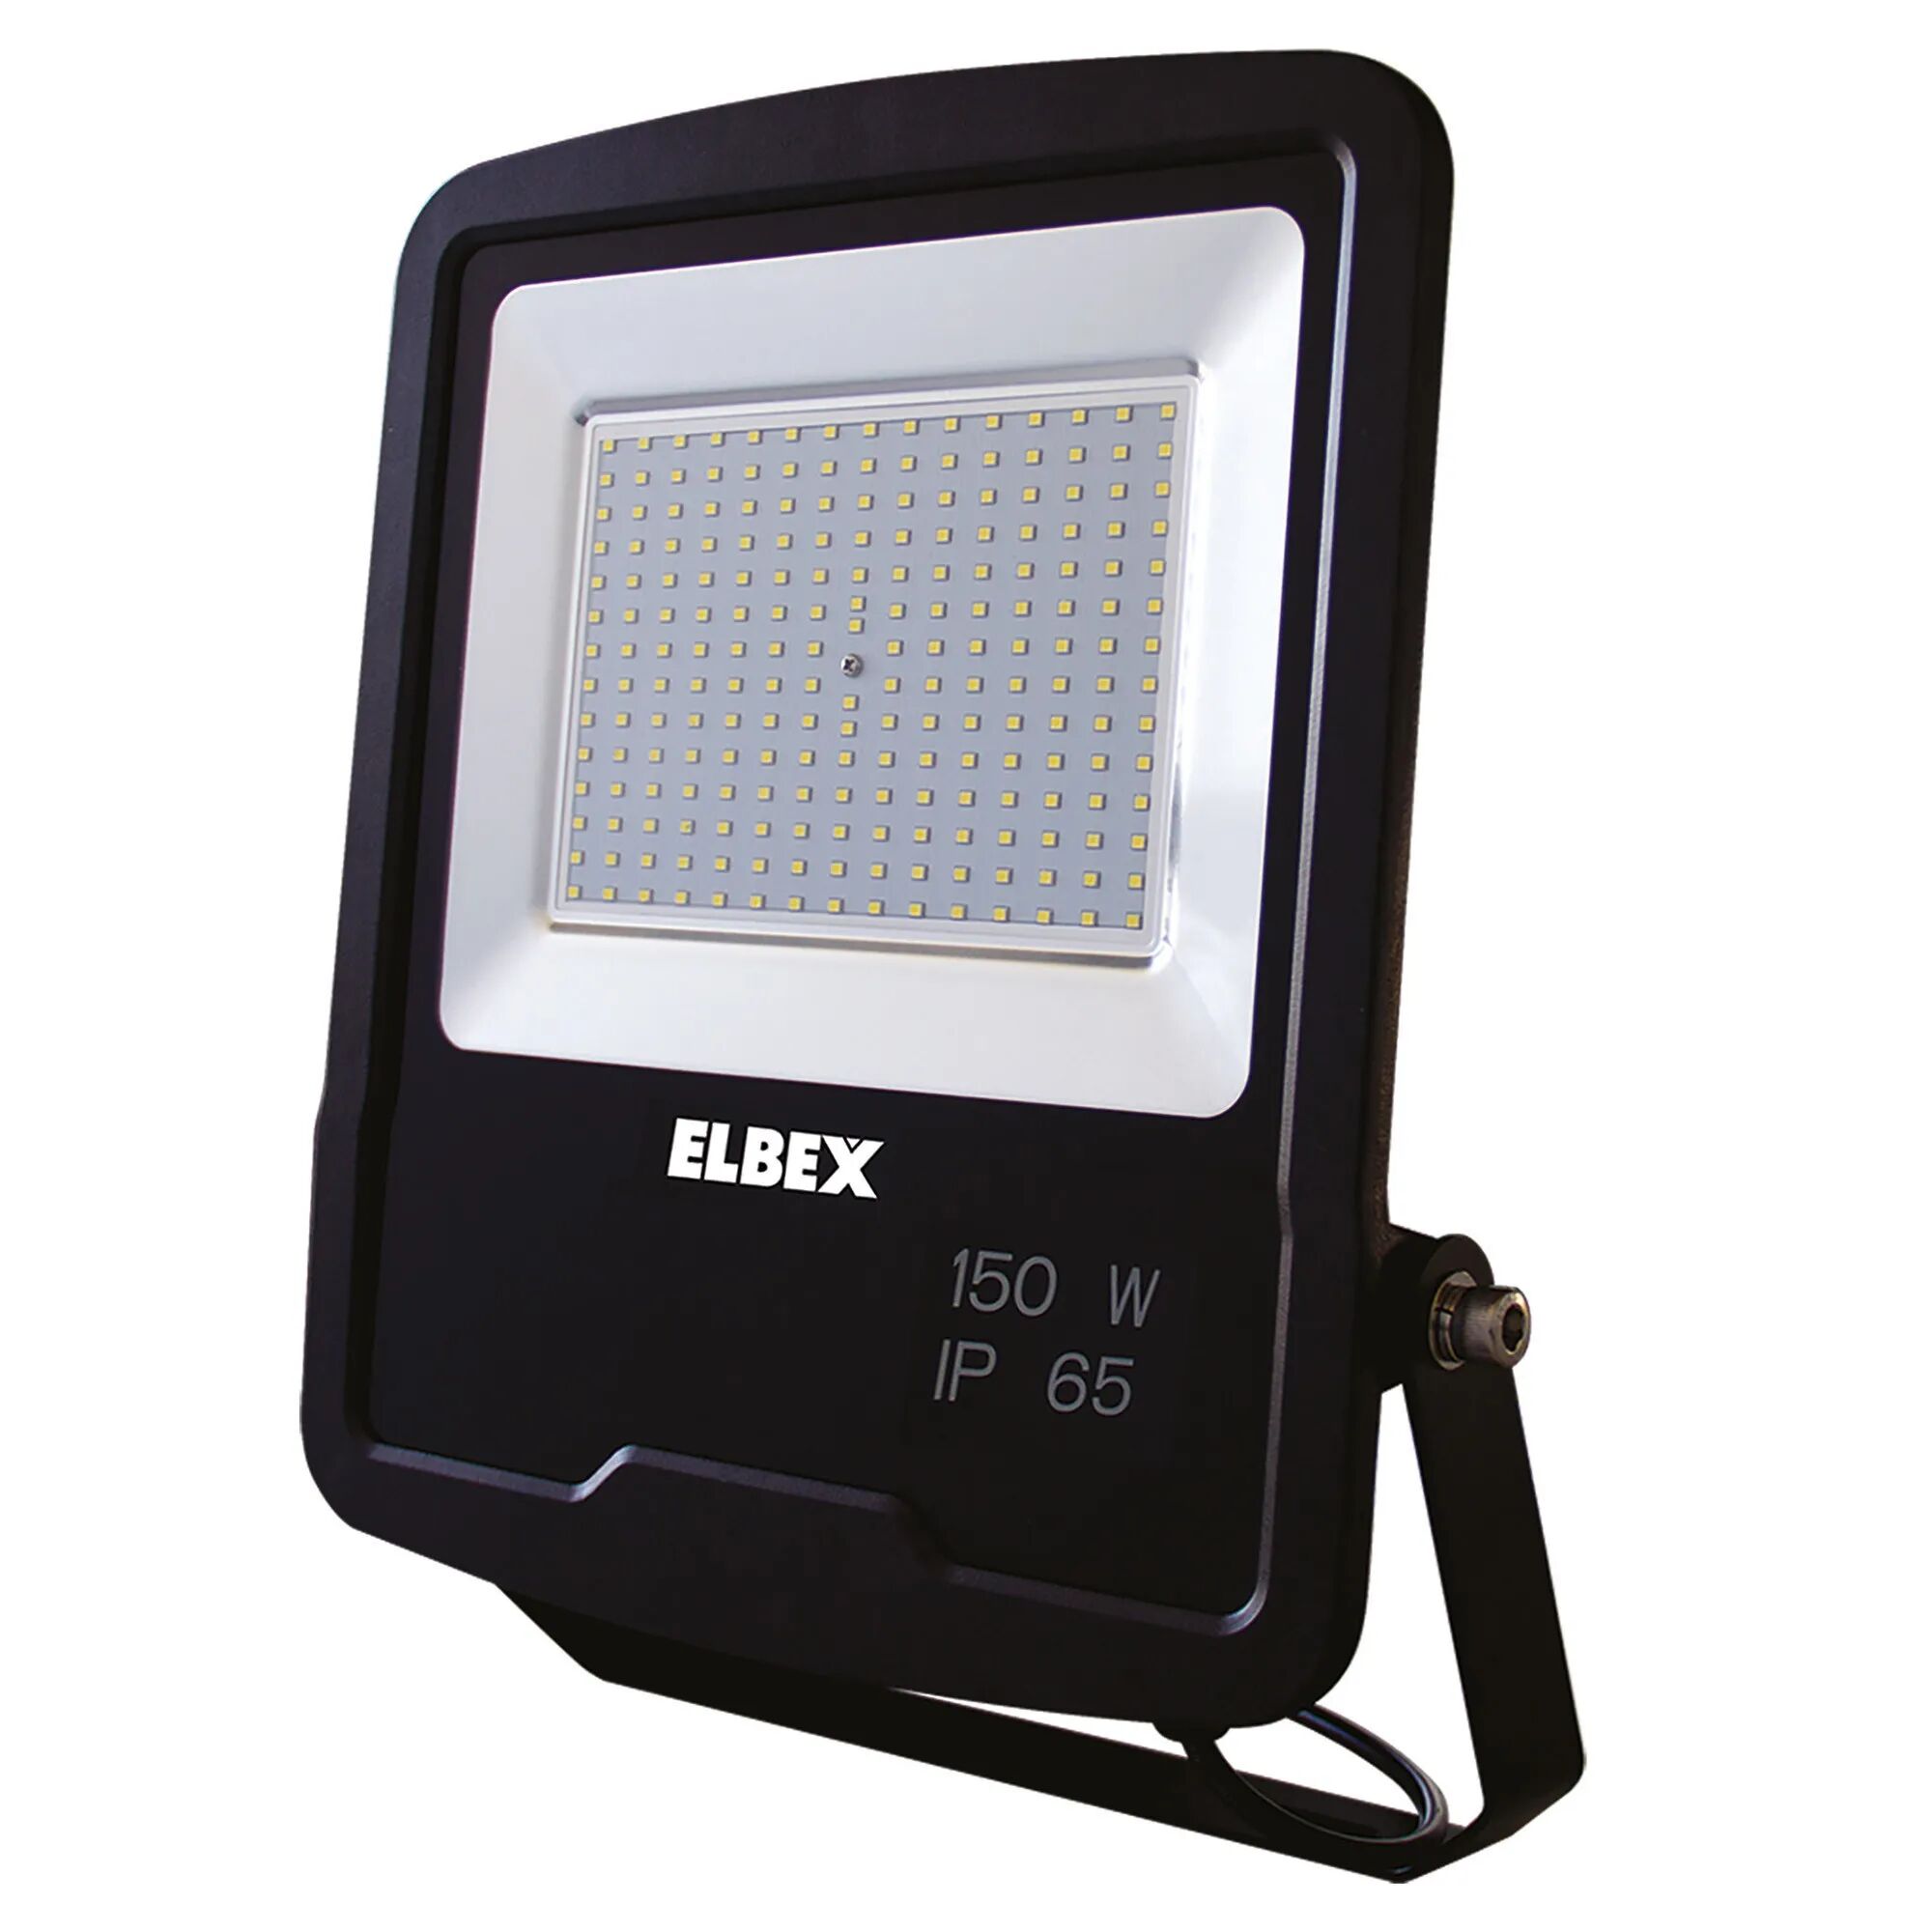 Tecnomat PROIETTORE LED ELBEX 150W 12000 lumen 4000K LUCE BIANCA COLORE NERO IP65